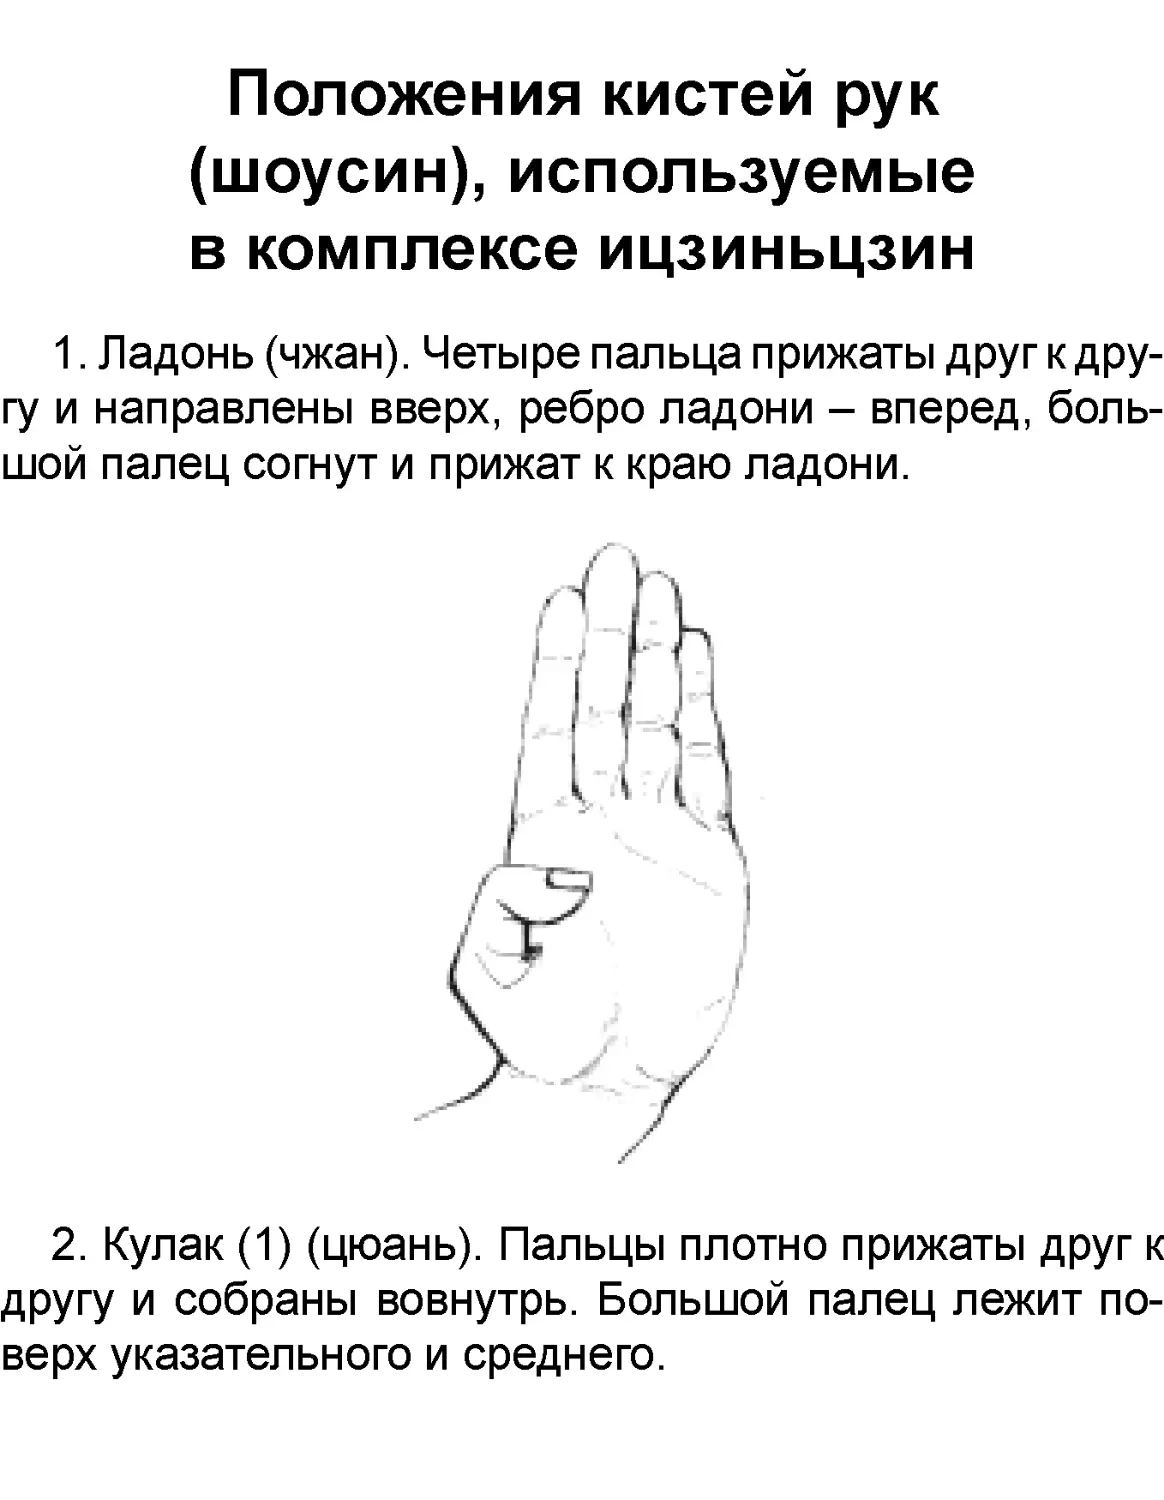 ﻿Положения кистей рук øшоусинù, используемые в комплексе ицзиньцзи